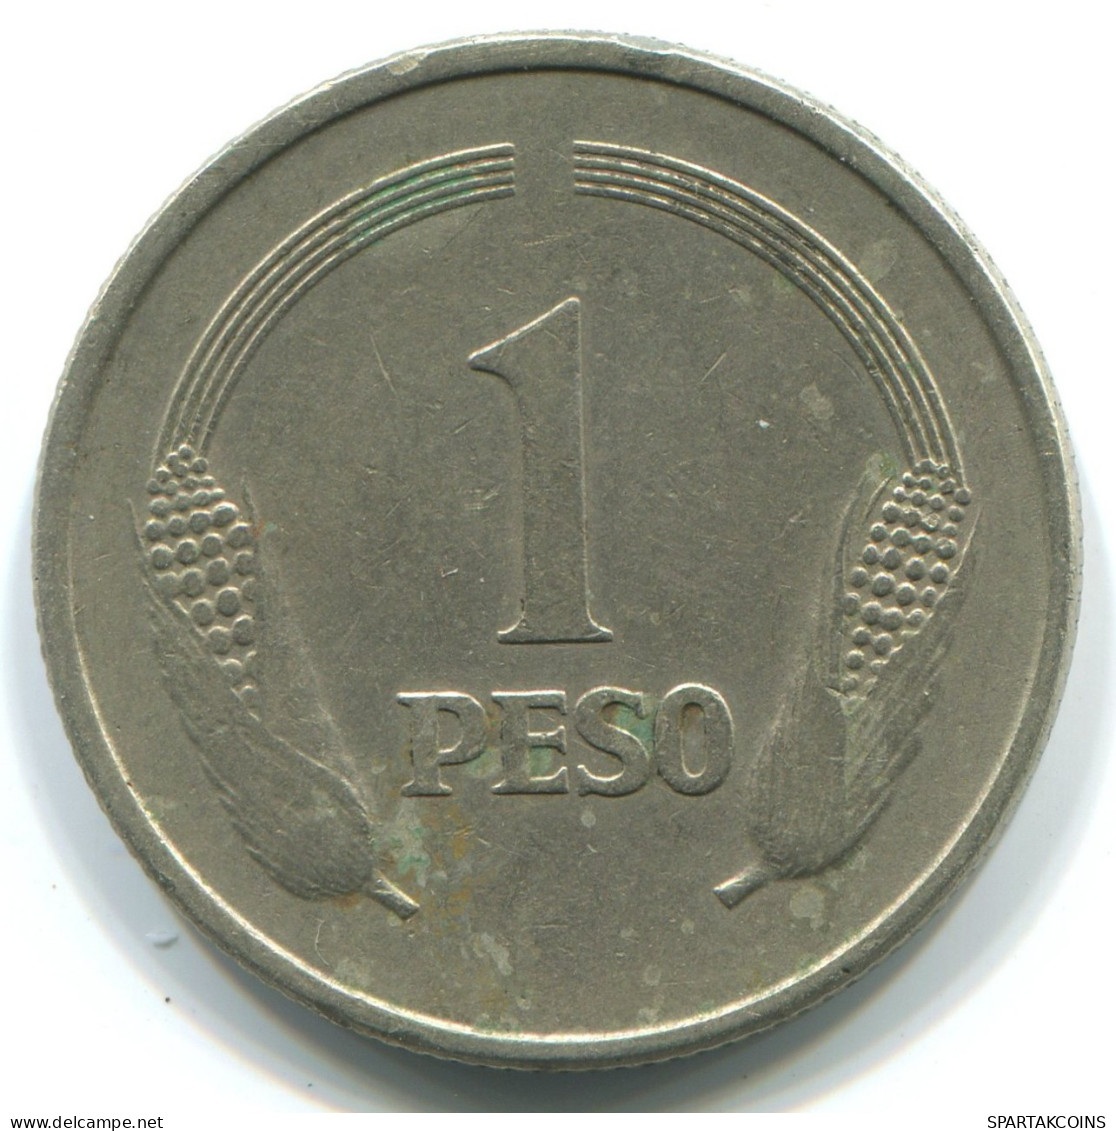 1 PESO 1976 COLOMBIA Coin #WW1177.U.A - Colombia